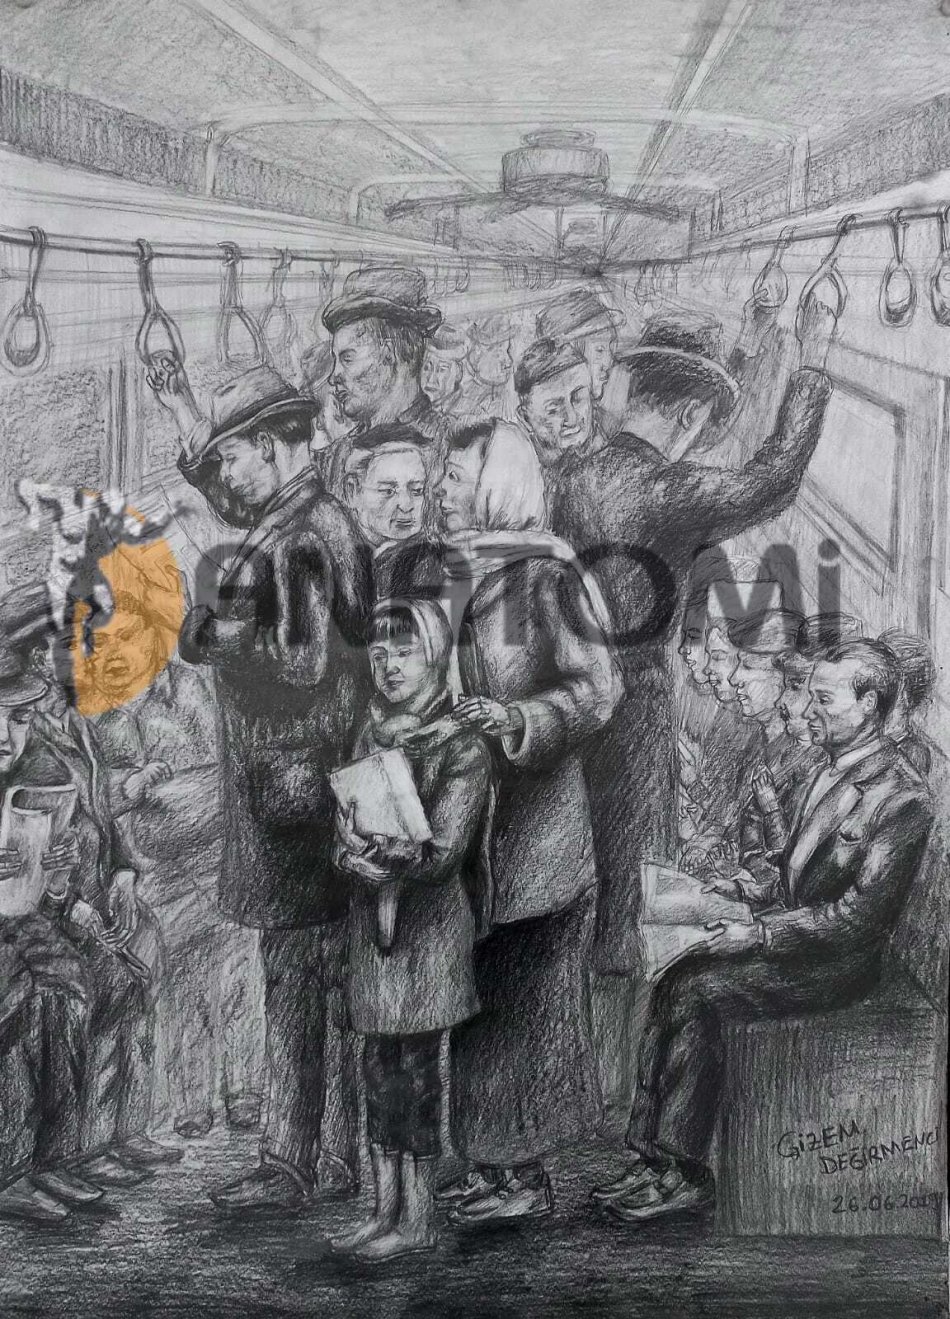 Toplu taşıma oturan ve ayakta seyahat eden yolcular